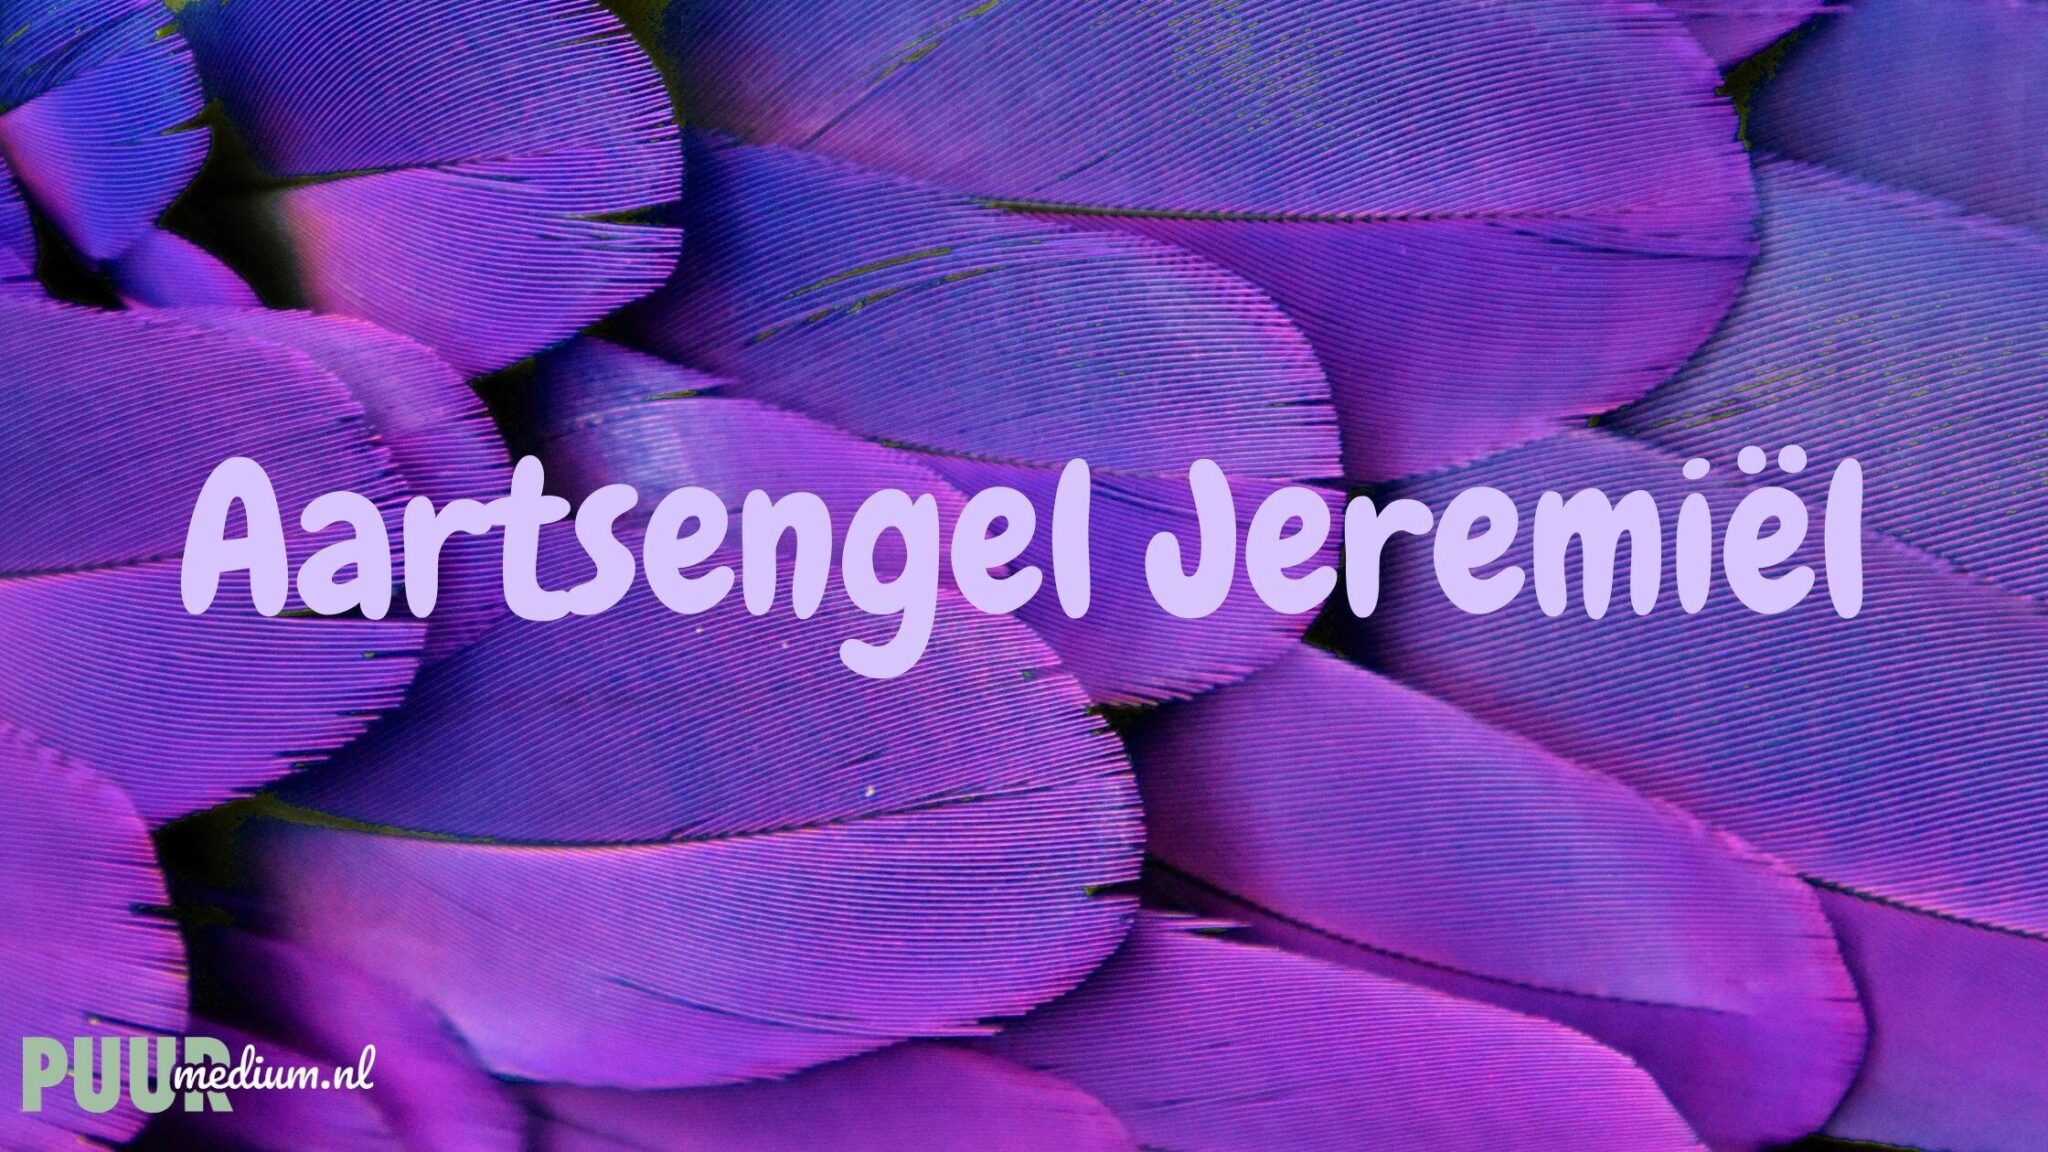 Aartsengel Jeremiël